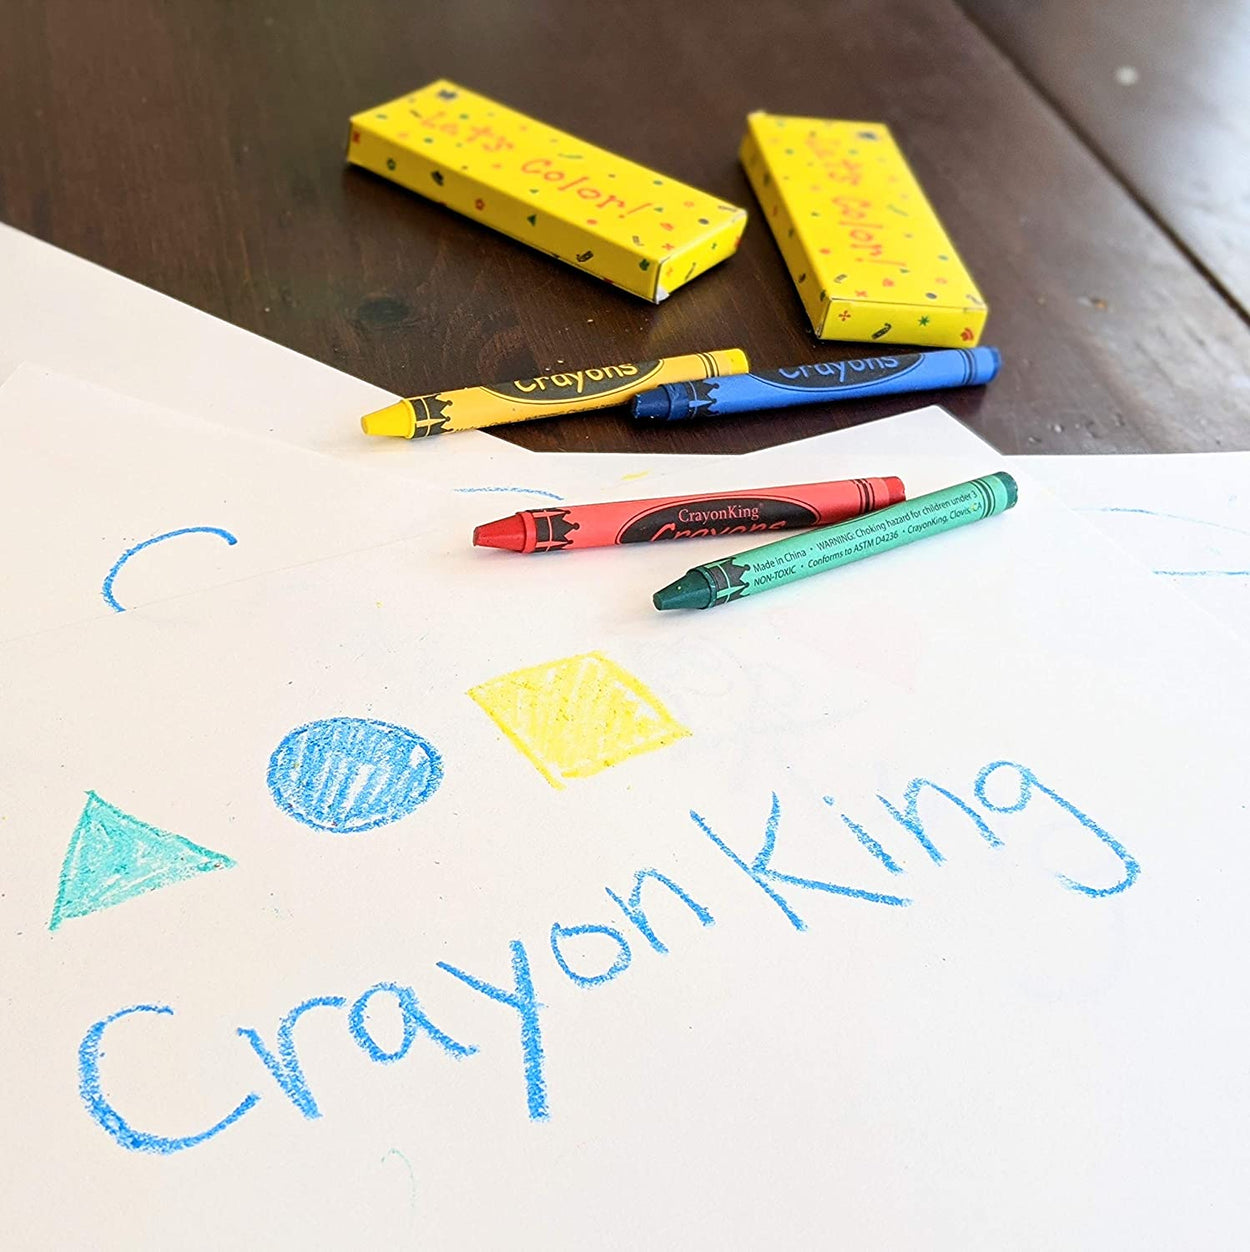 500 Packs 4 Pack Of Crayons - Crayon - at 